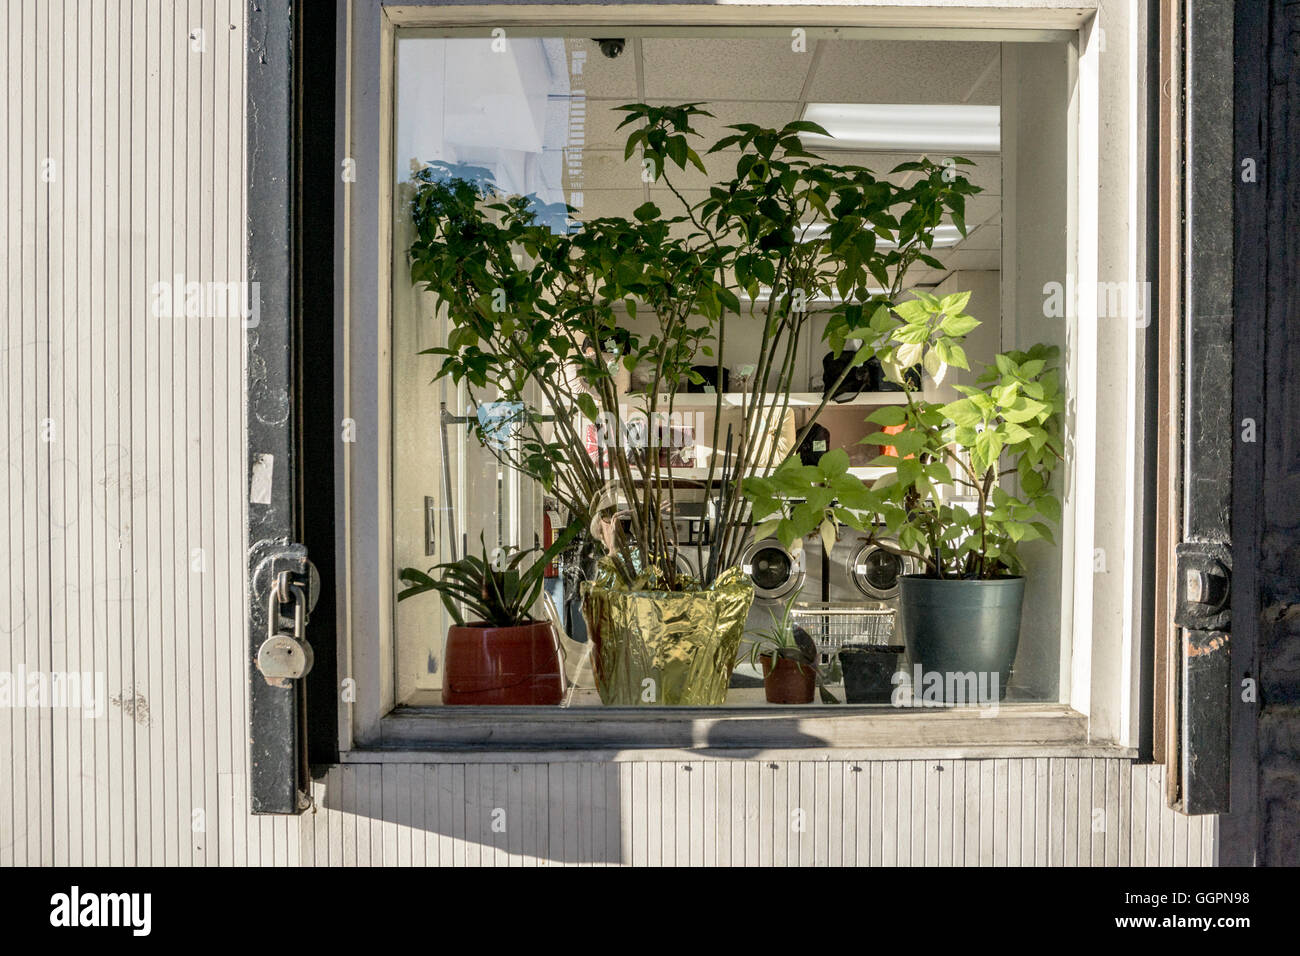 Fenêtre d'angle sud de la laverie automatique sur la 10e avenue avec les végétaux vivants bien entretenus et les paquets de lessive à l'intérieur Banque D'Images